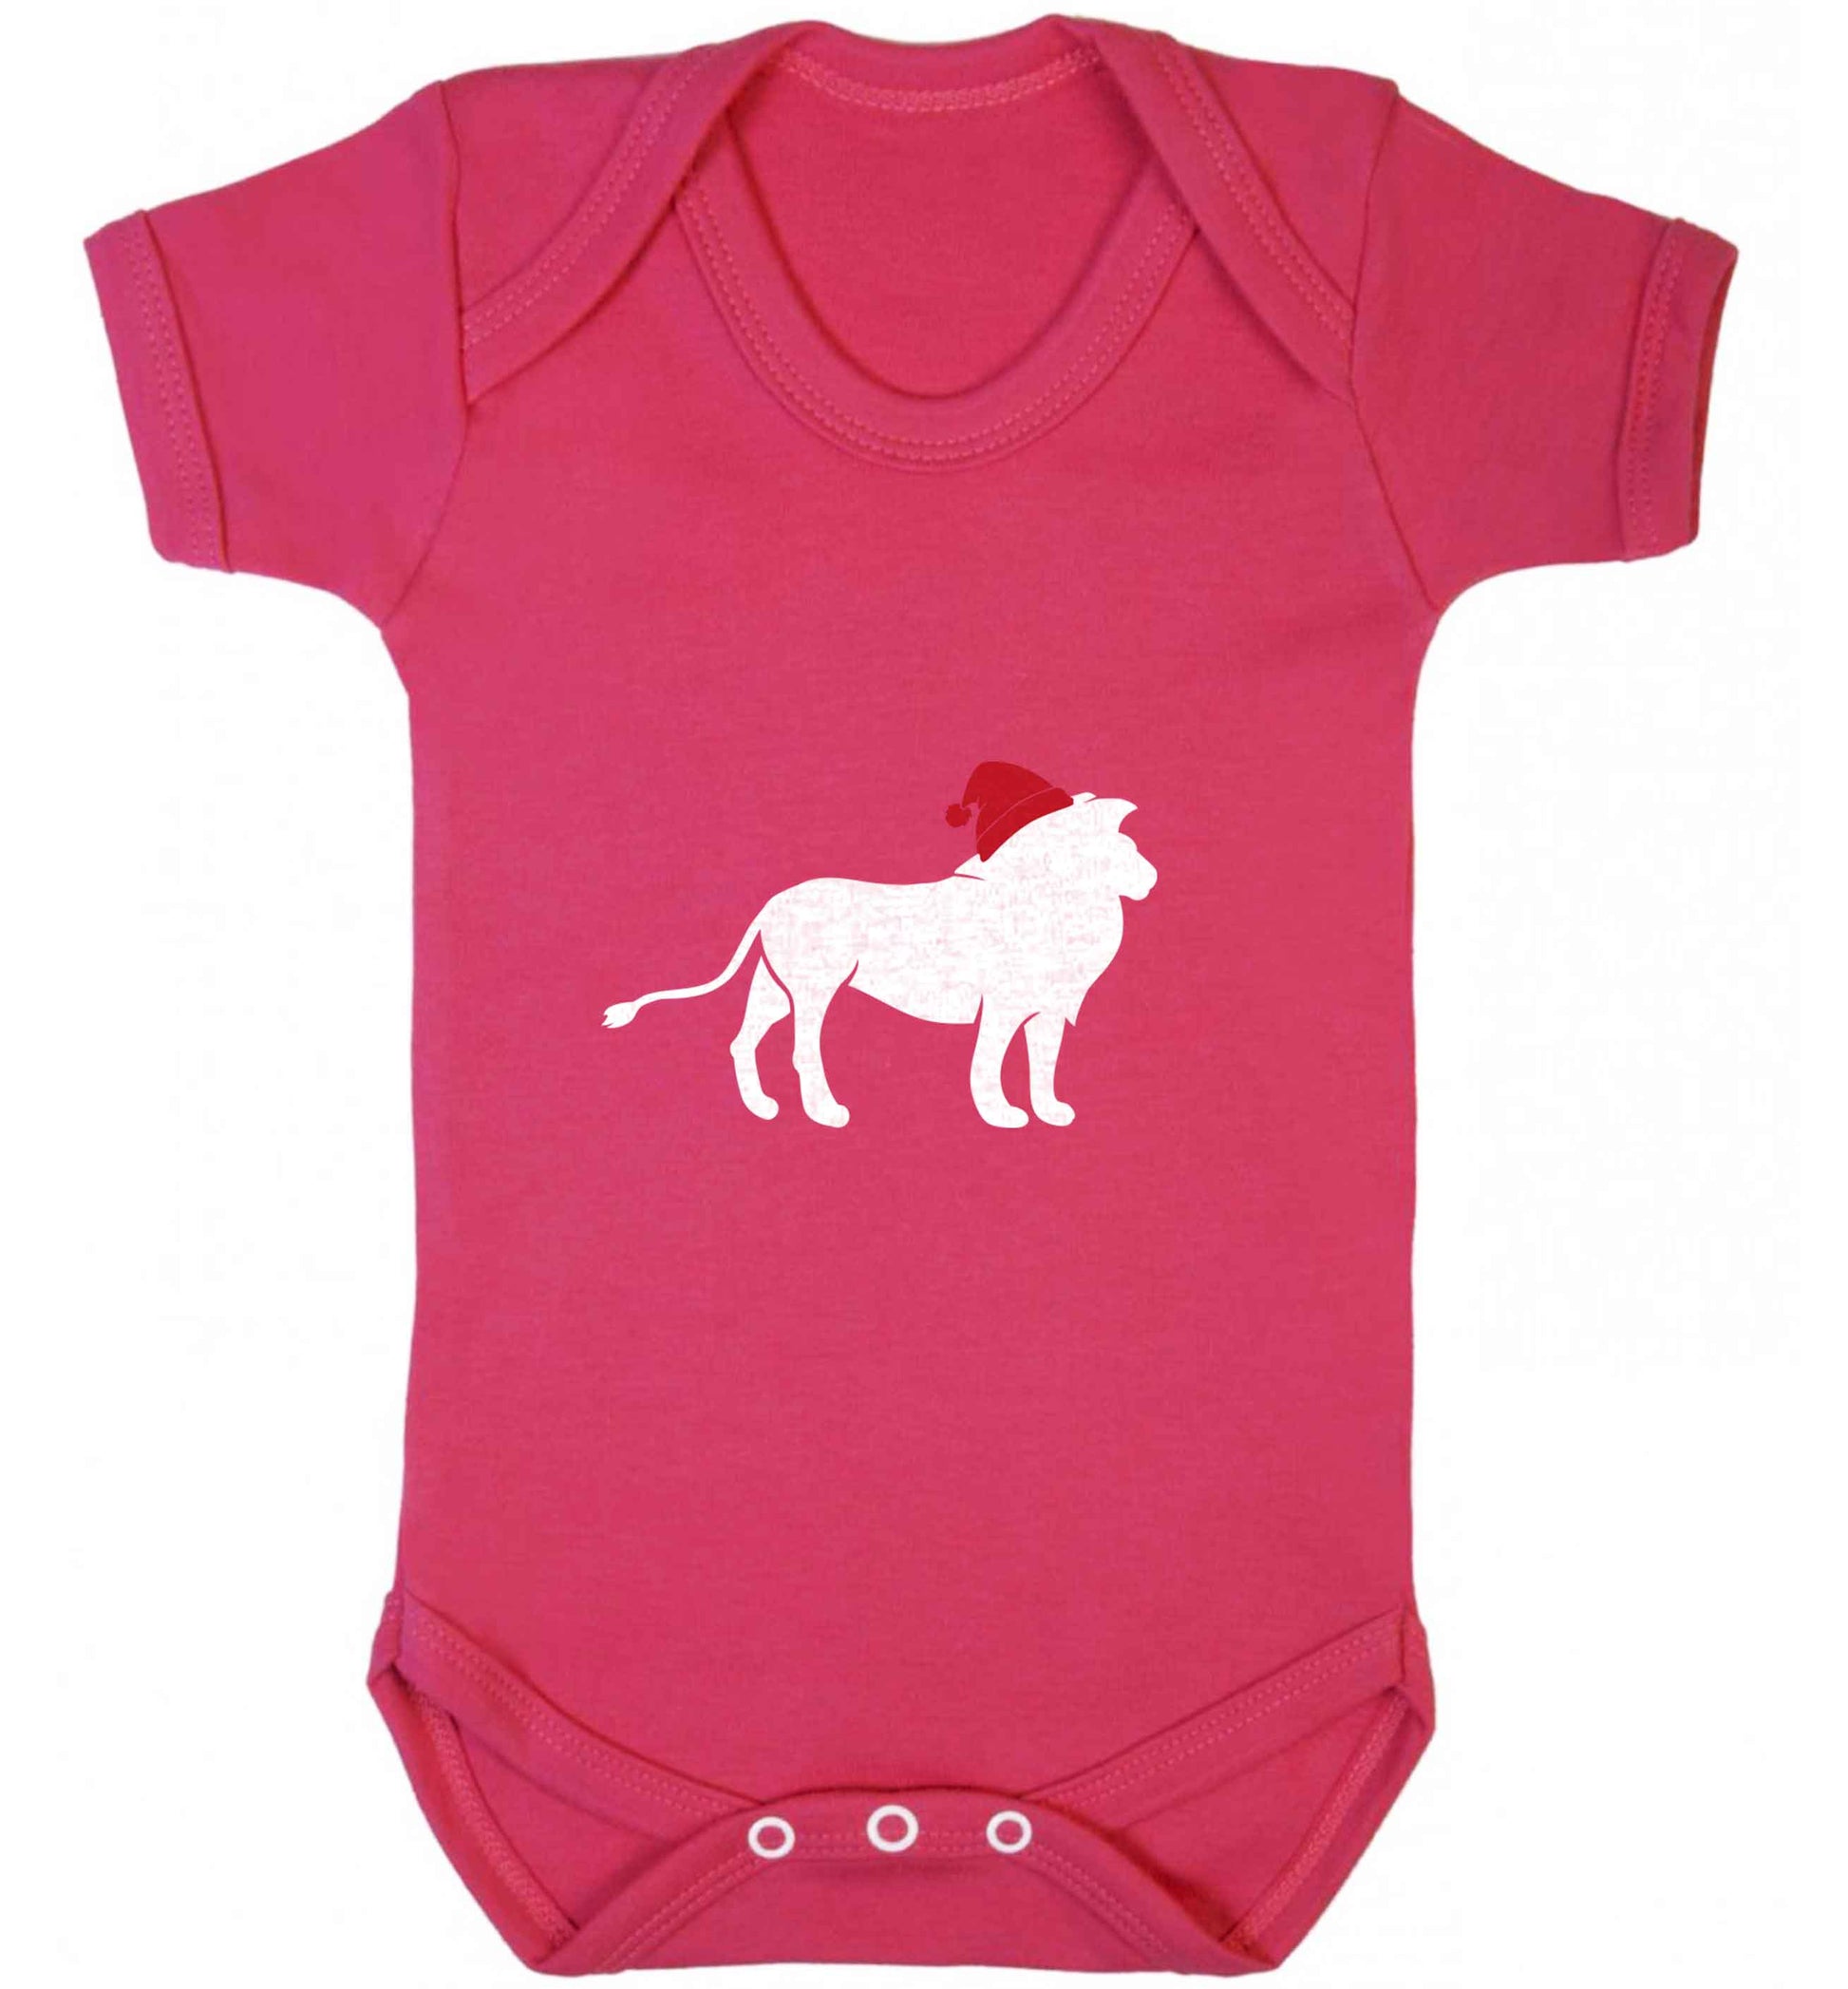 Gold lion santa baby vest dark pink 18-24 months